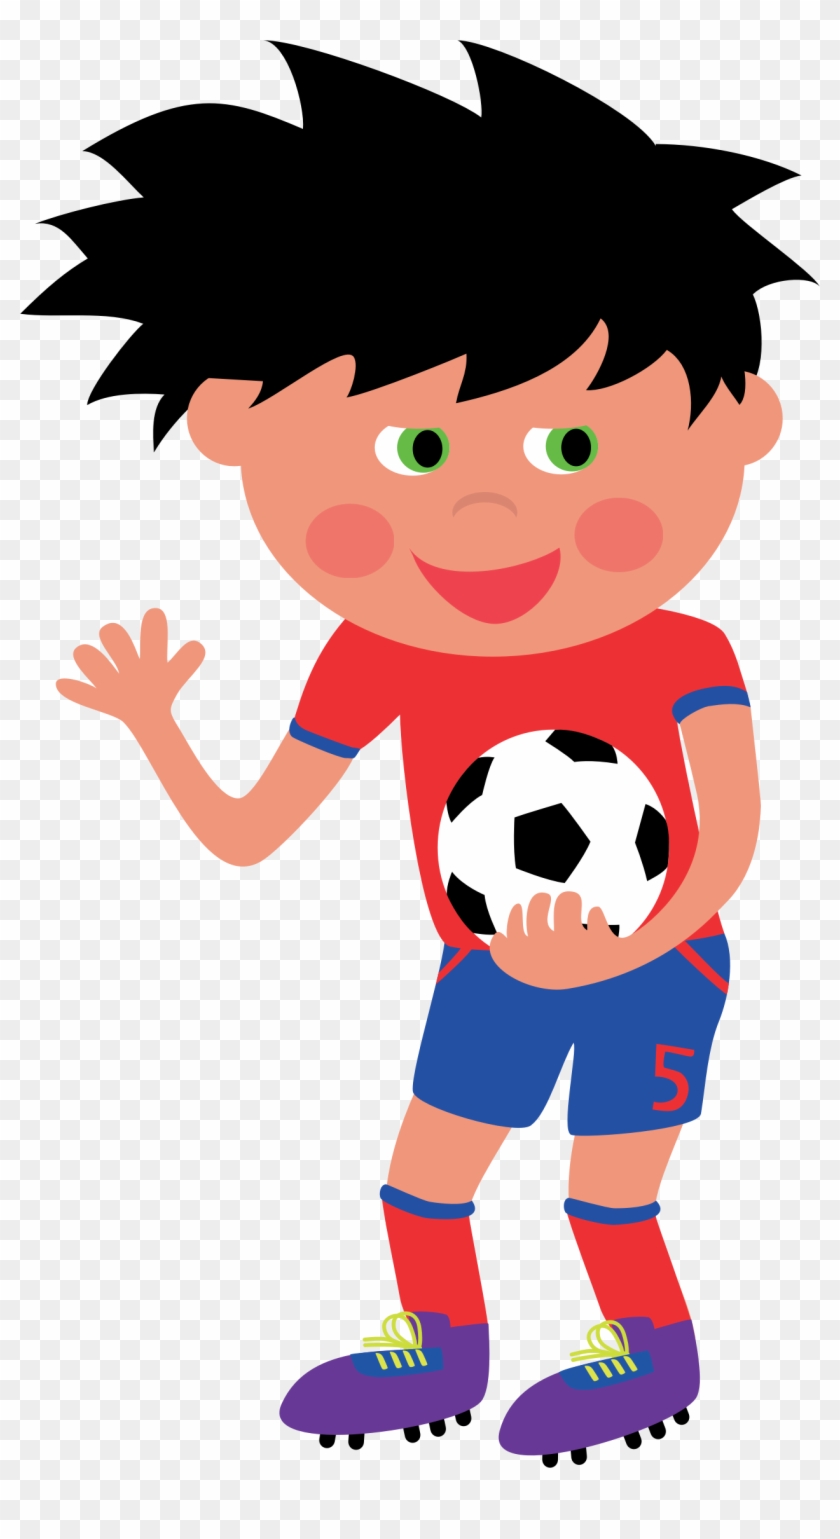 Мальчик с футбольным мячиком